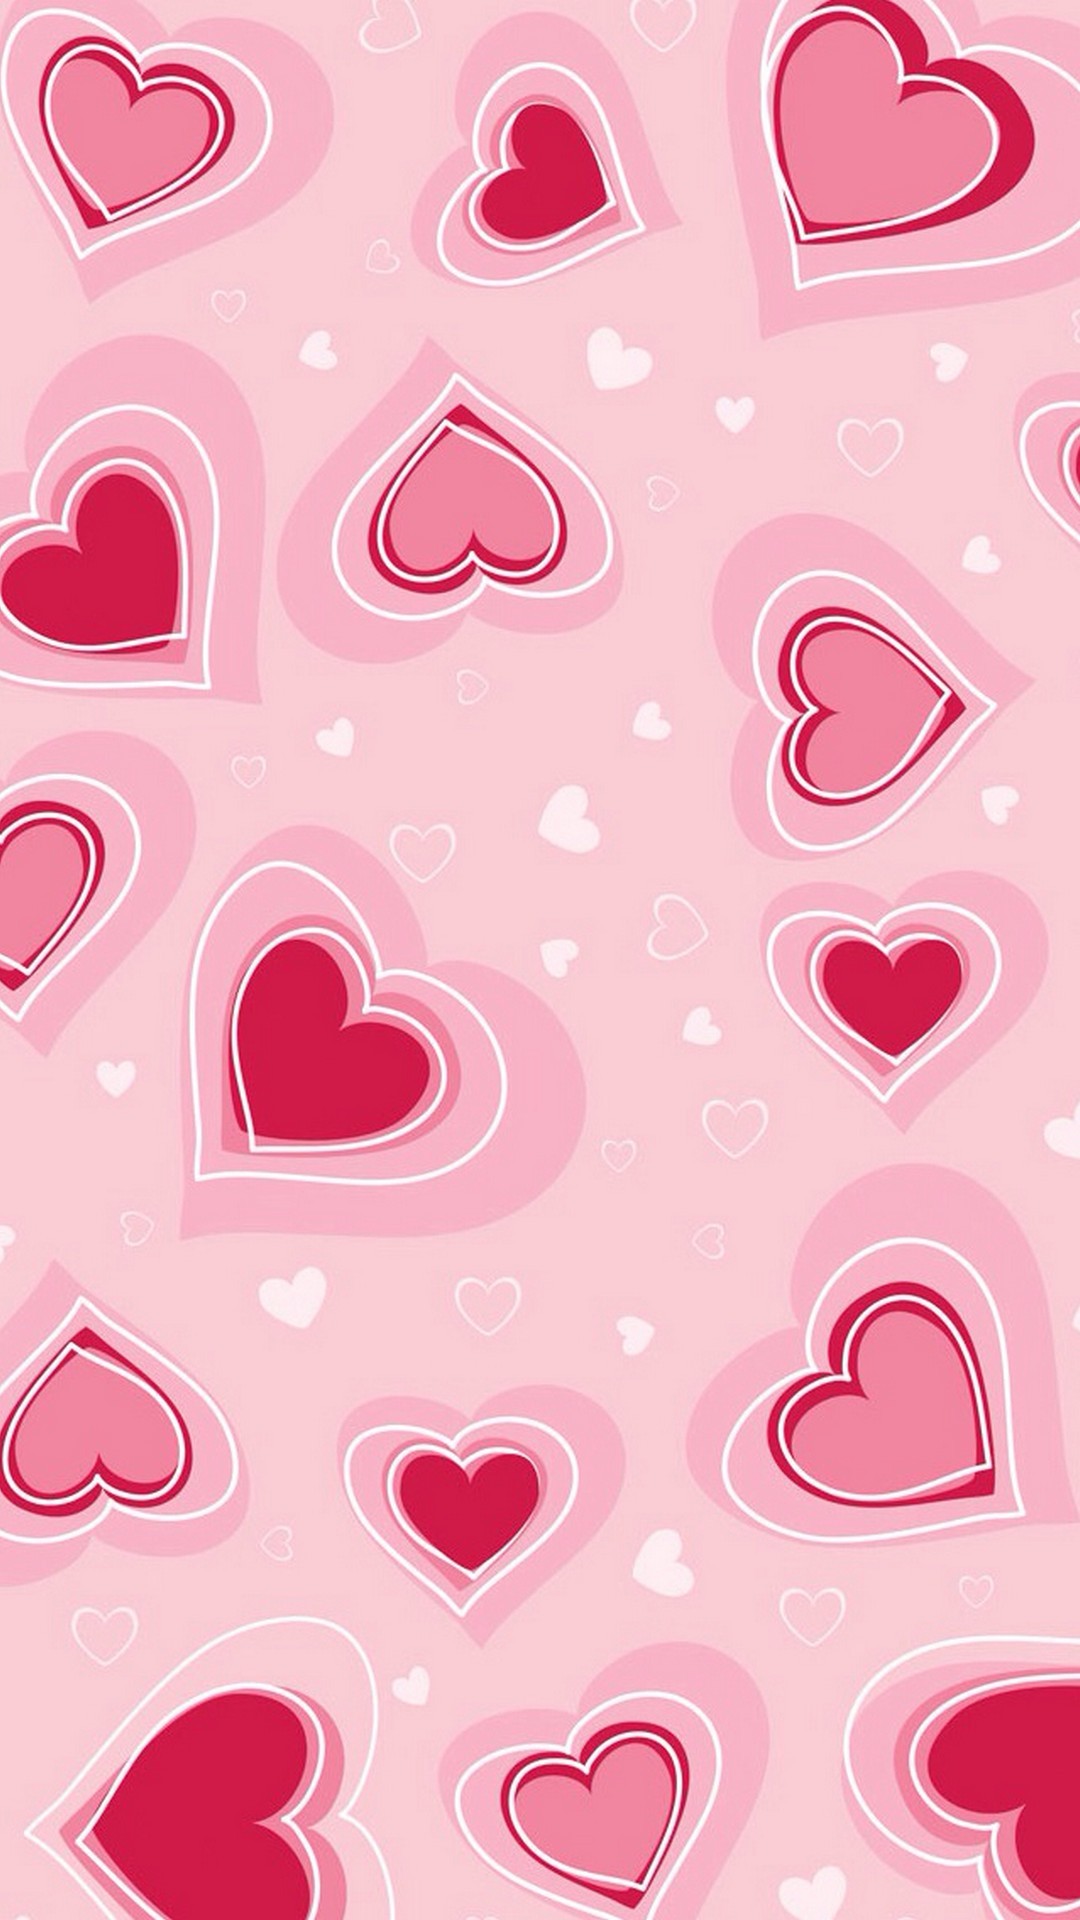 1080x1920 Valentine Wallpaper iPhone 5 resolution 